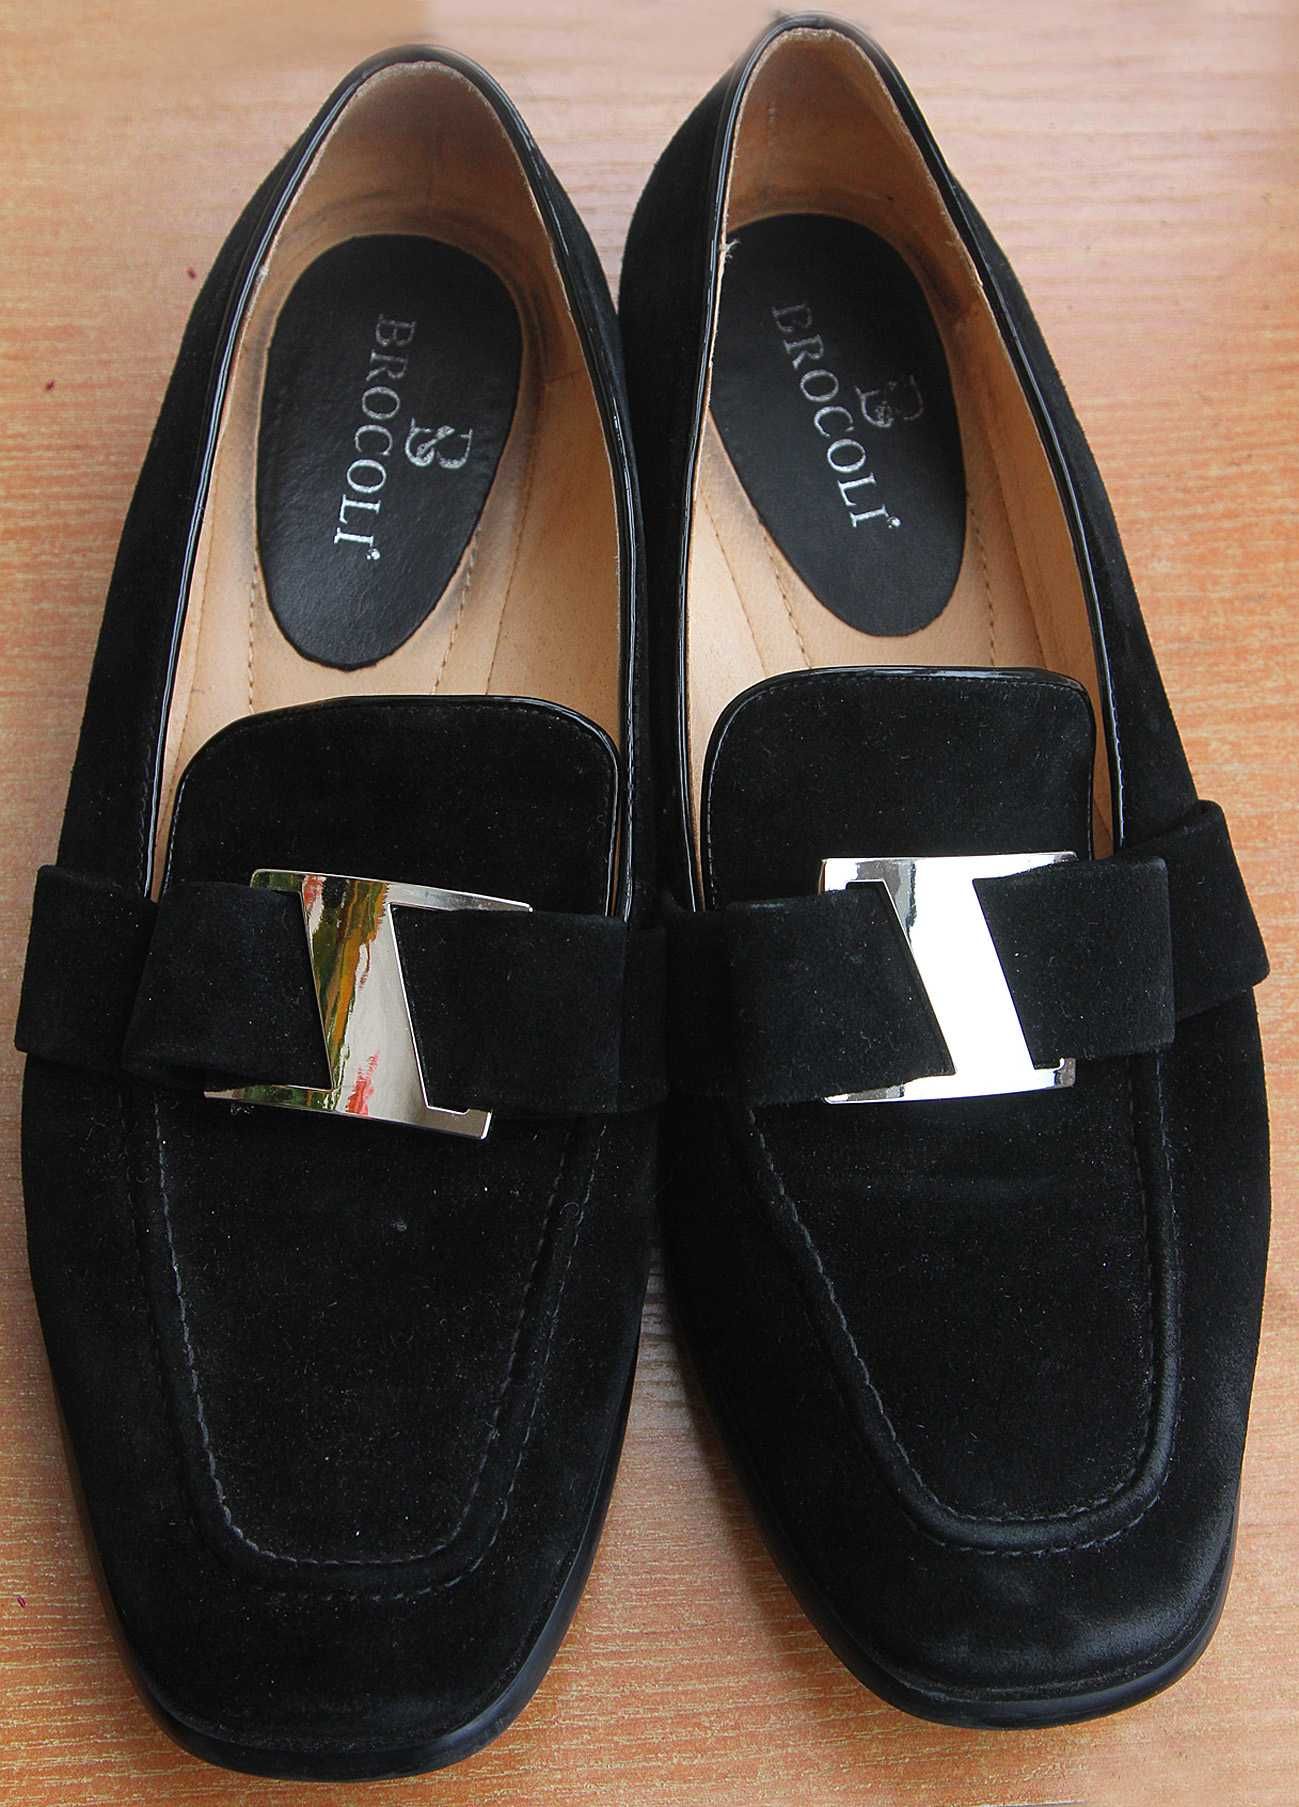 Мешти.туфлі жіночі/Туфли женские , замшивые Brocoli 39 розмір.